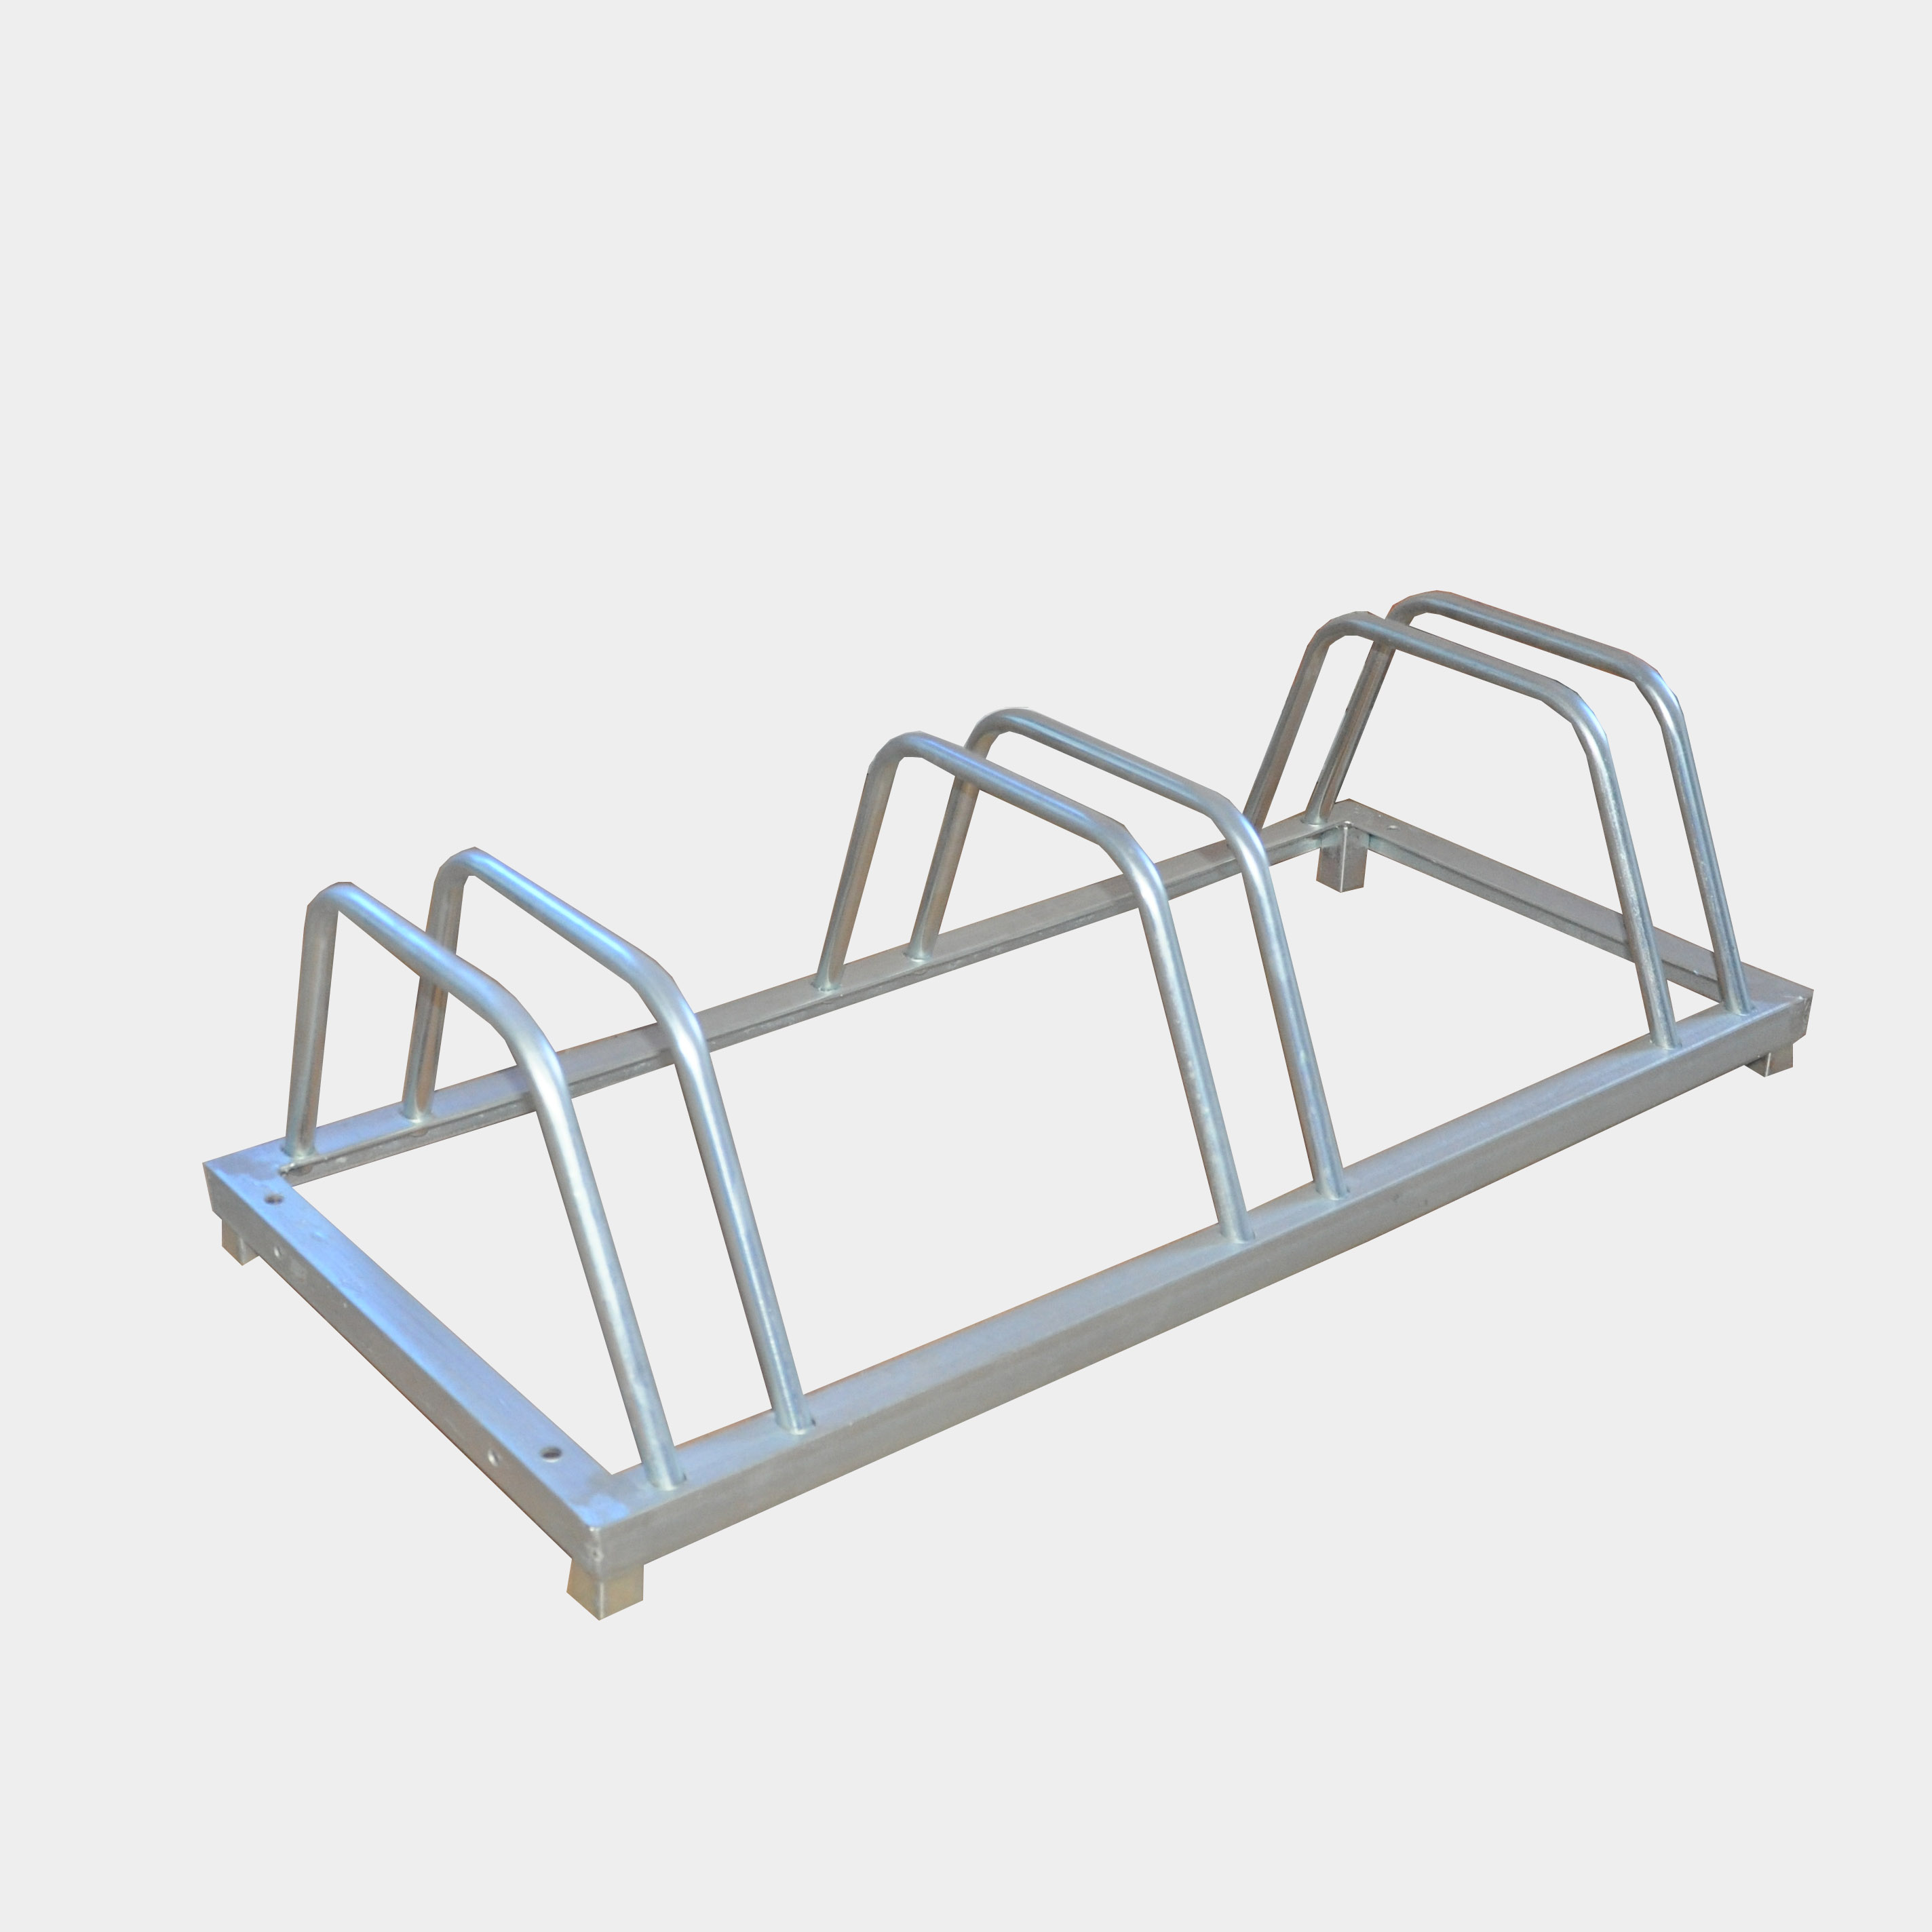 Práctico soporte de metal versátil para bicicletas de pie con 3 soportes